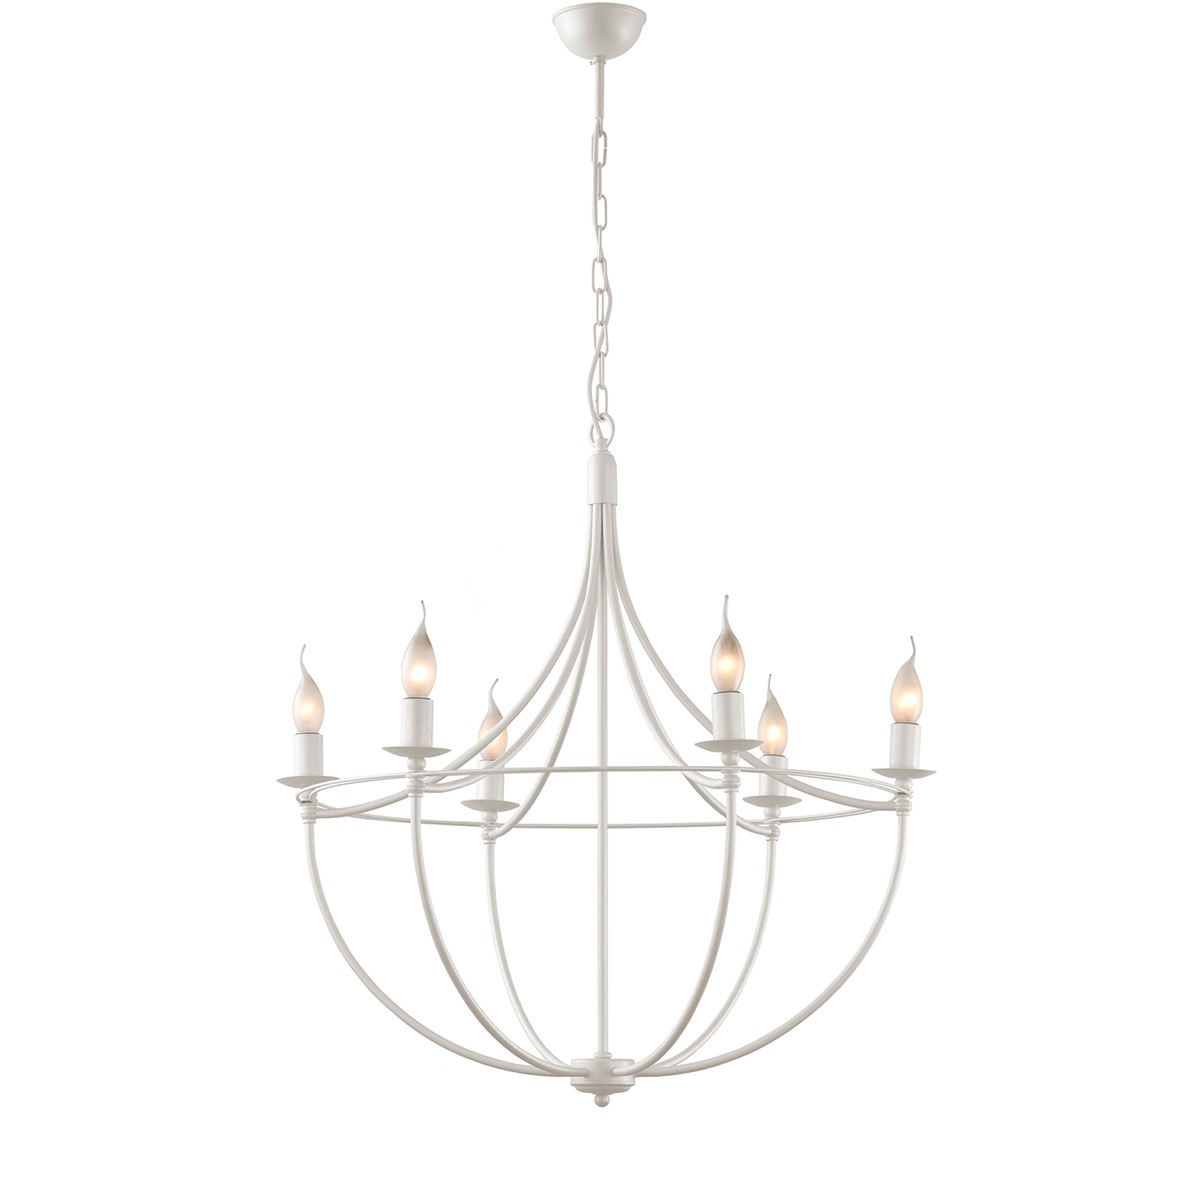 Παραδοσιακό 6φωτο φωτιστικό σε λευκό χρώμα VILLAGE white rustic 6-bulb chandelier